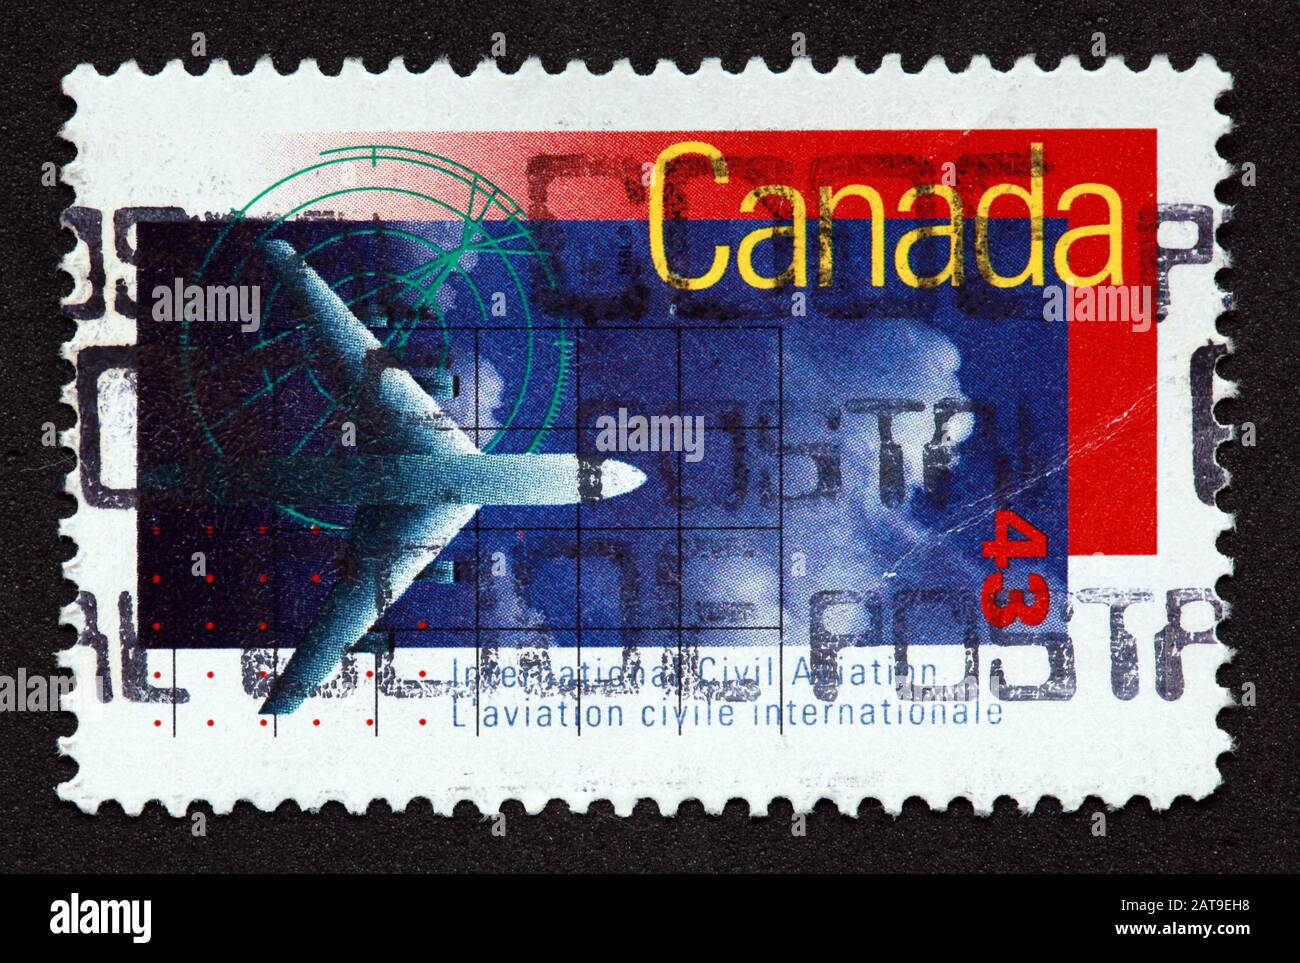 Timbre canadien, Timbre Canada, postes Canada, timbre utilisé, avion international de l'aviation civile du Canada 43, cachet postal de l'avion Banque D'Images